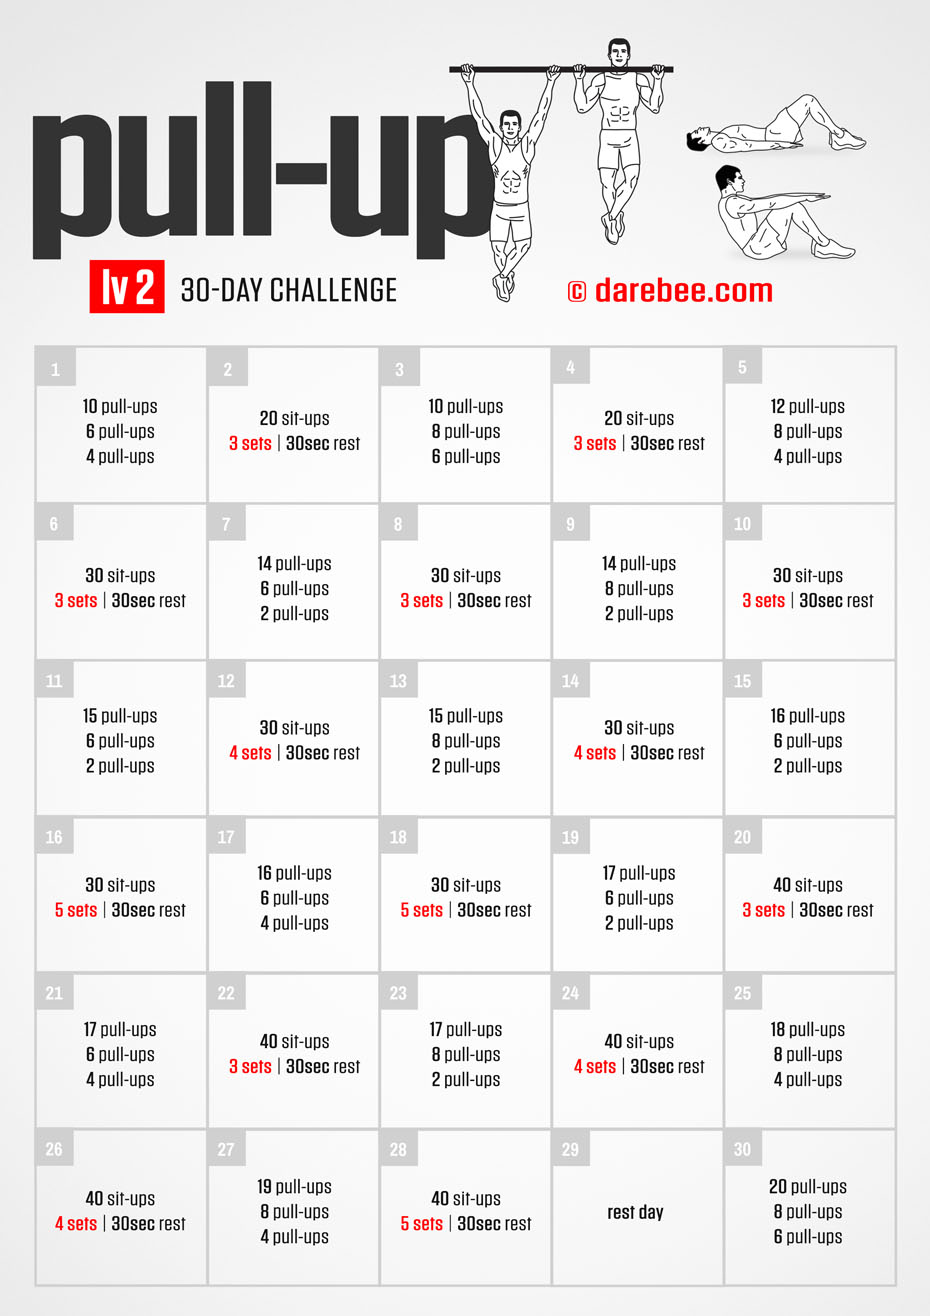 https://darebee.com/images/challenges/pullup2-challenge.jpg